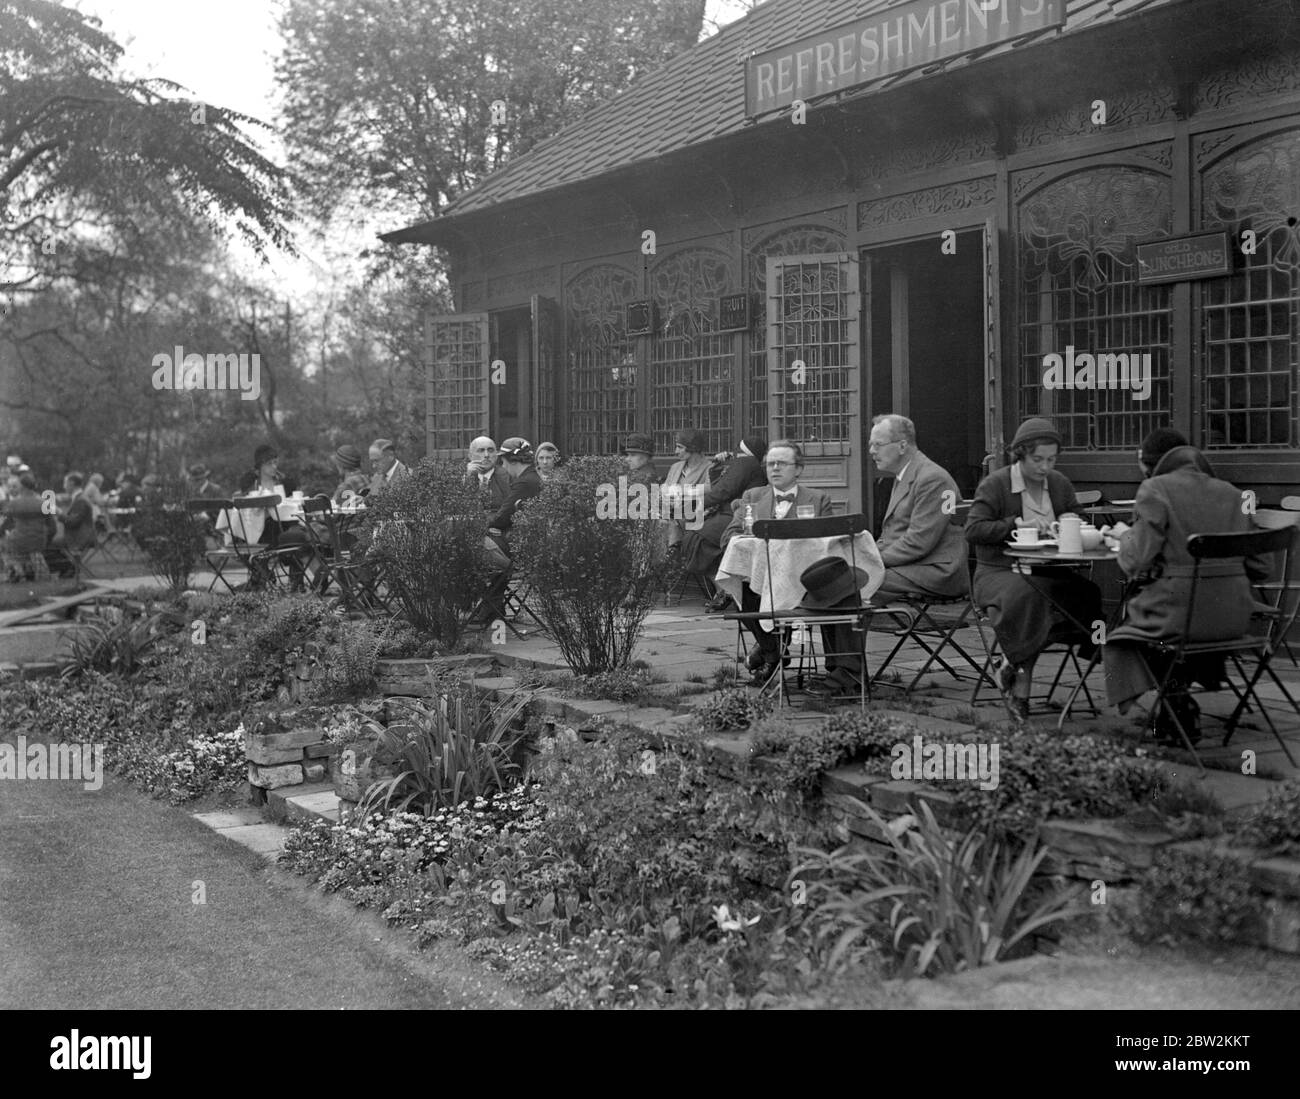 Embankment Gardens, Charing Cross, wo die Londoner unter idealen Bedingungen Mahlzeiten im Freien einnehmen können. 18 Mai 1932 Stockfoto